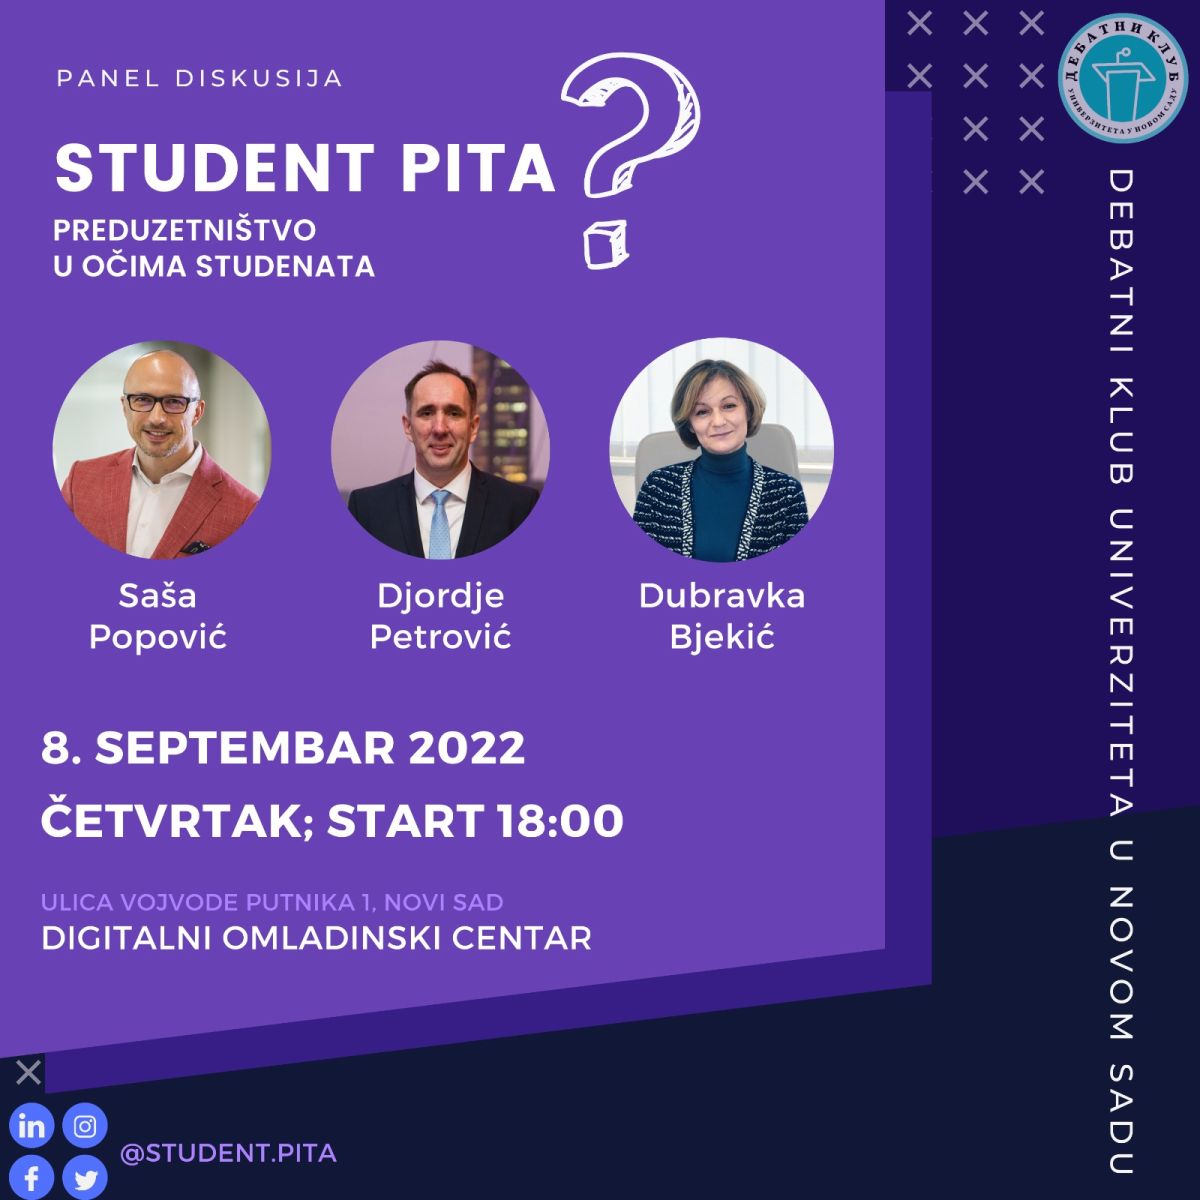 Panel diskusija "Student.pita?" u Novom Sadu